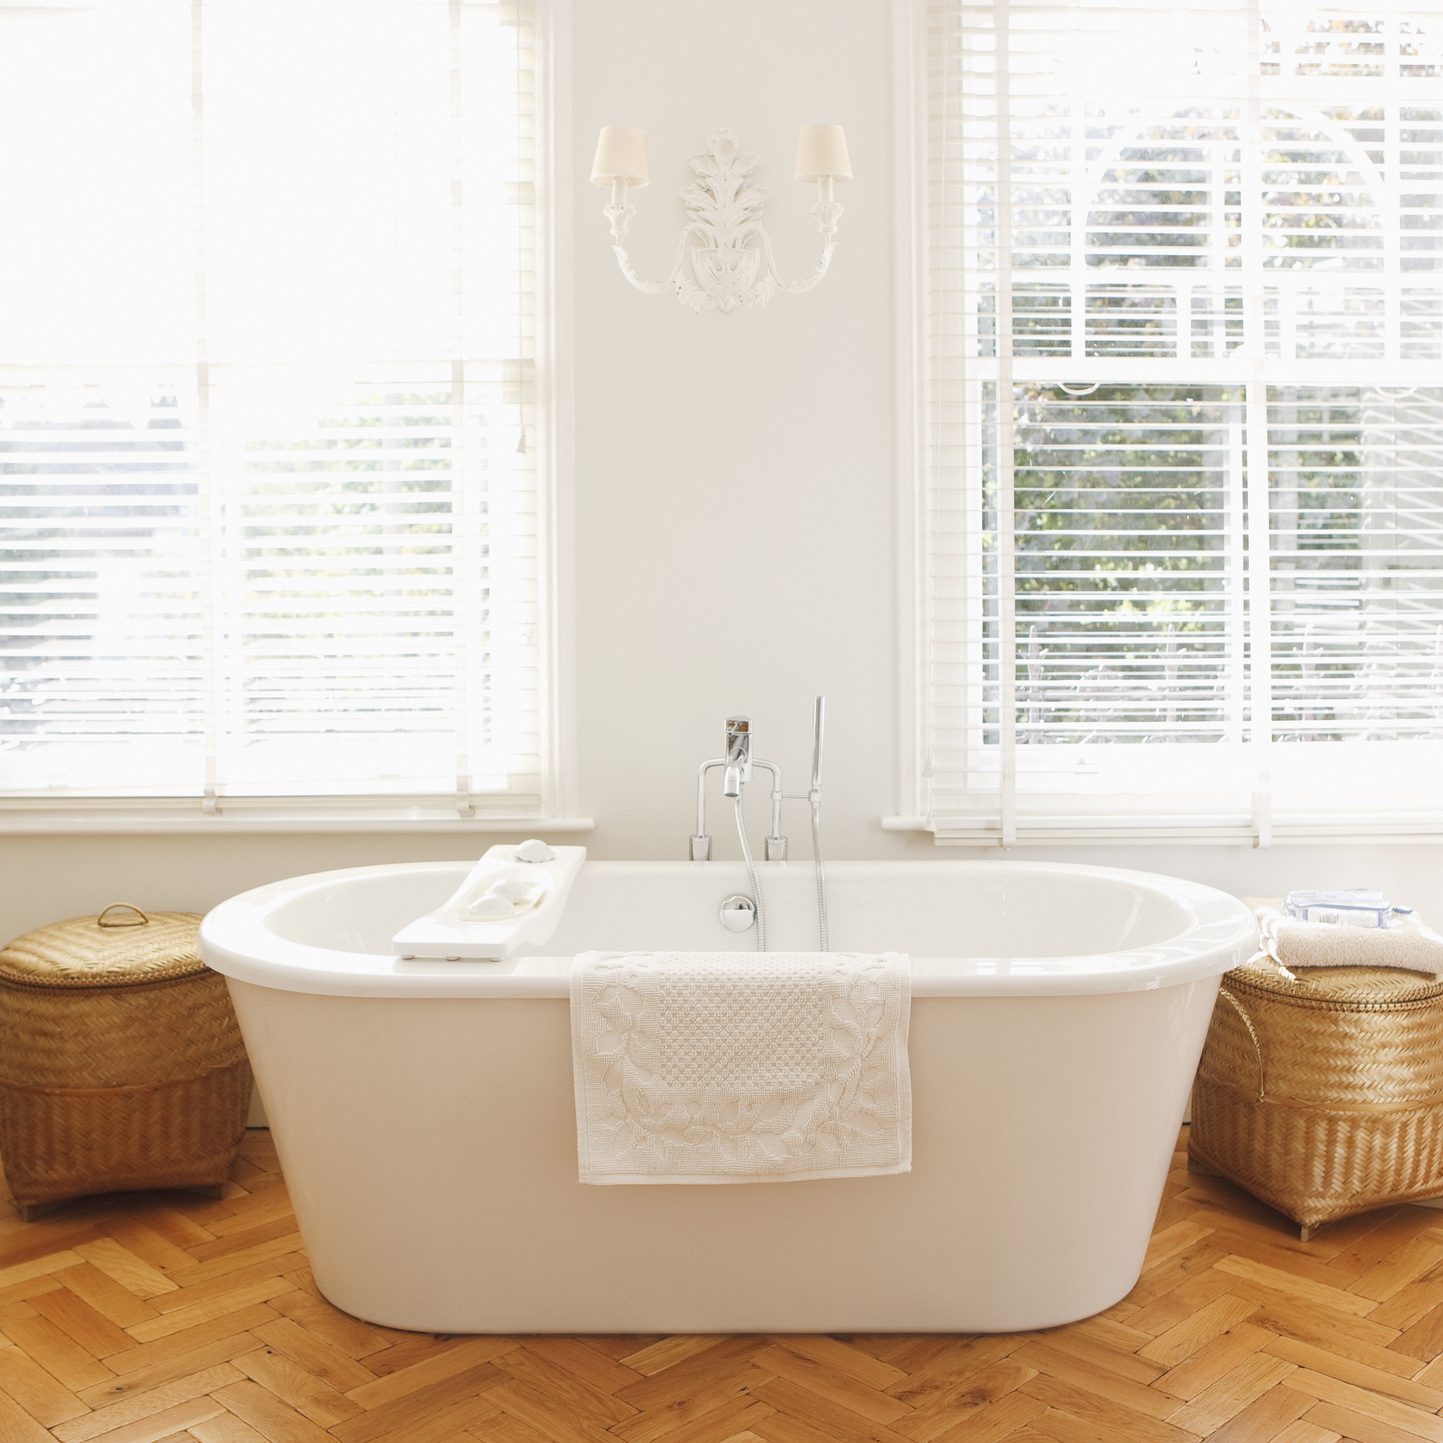 freestanding bath tub in bathroom near windows